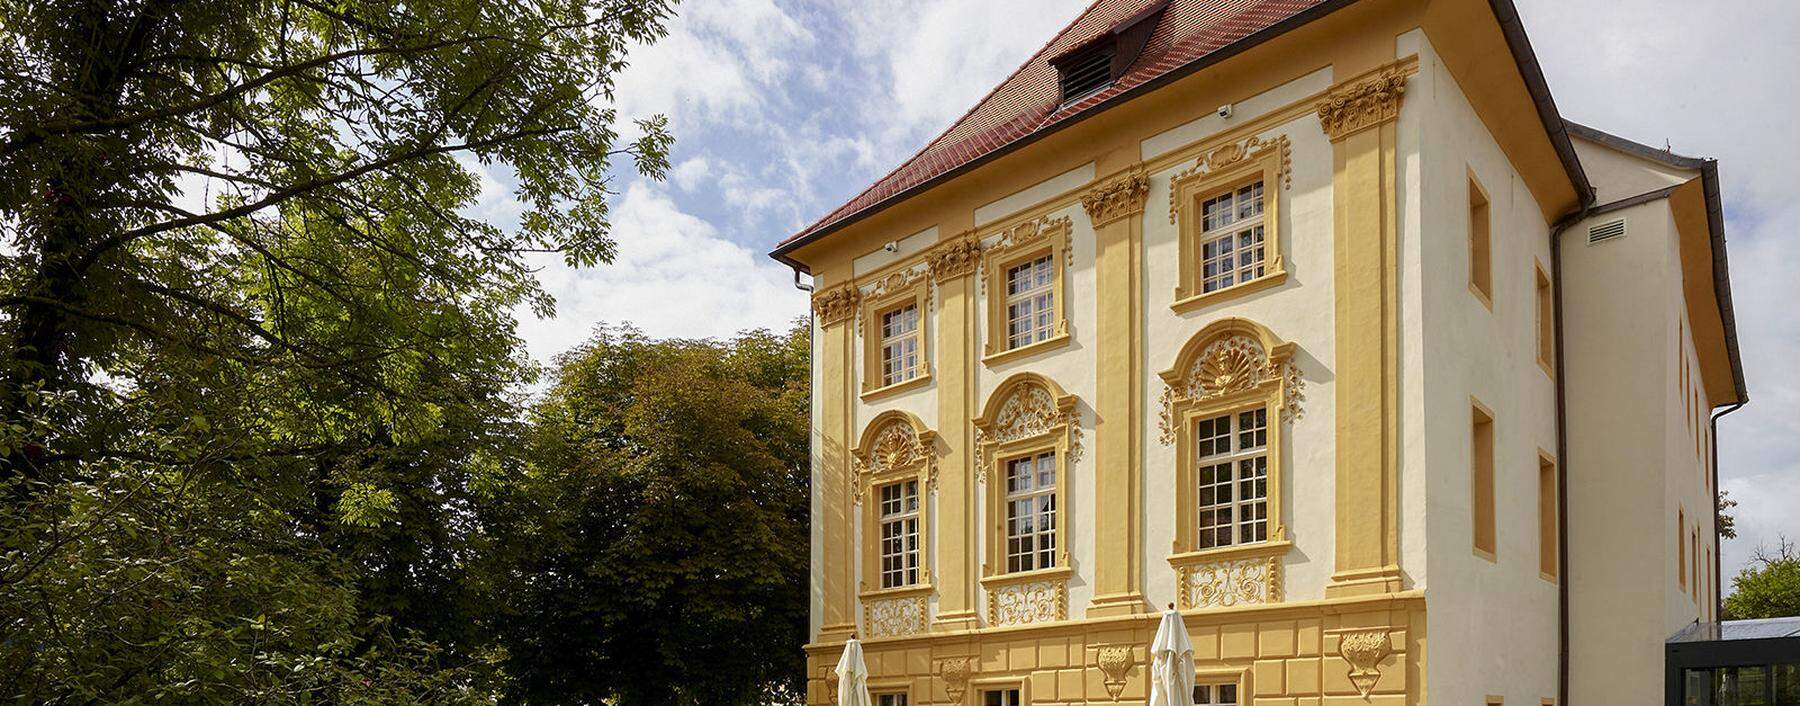 Das Hotel Hofwirt in Seckau kaufte Mateschitz um 861.000 Euro vom Stift Seckau, das sich das Anwesen nicht mehr leisten konnte.